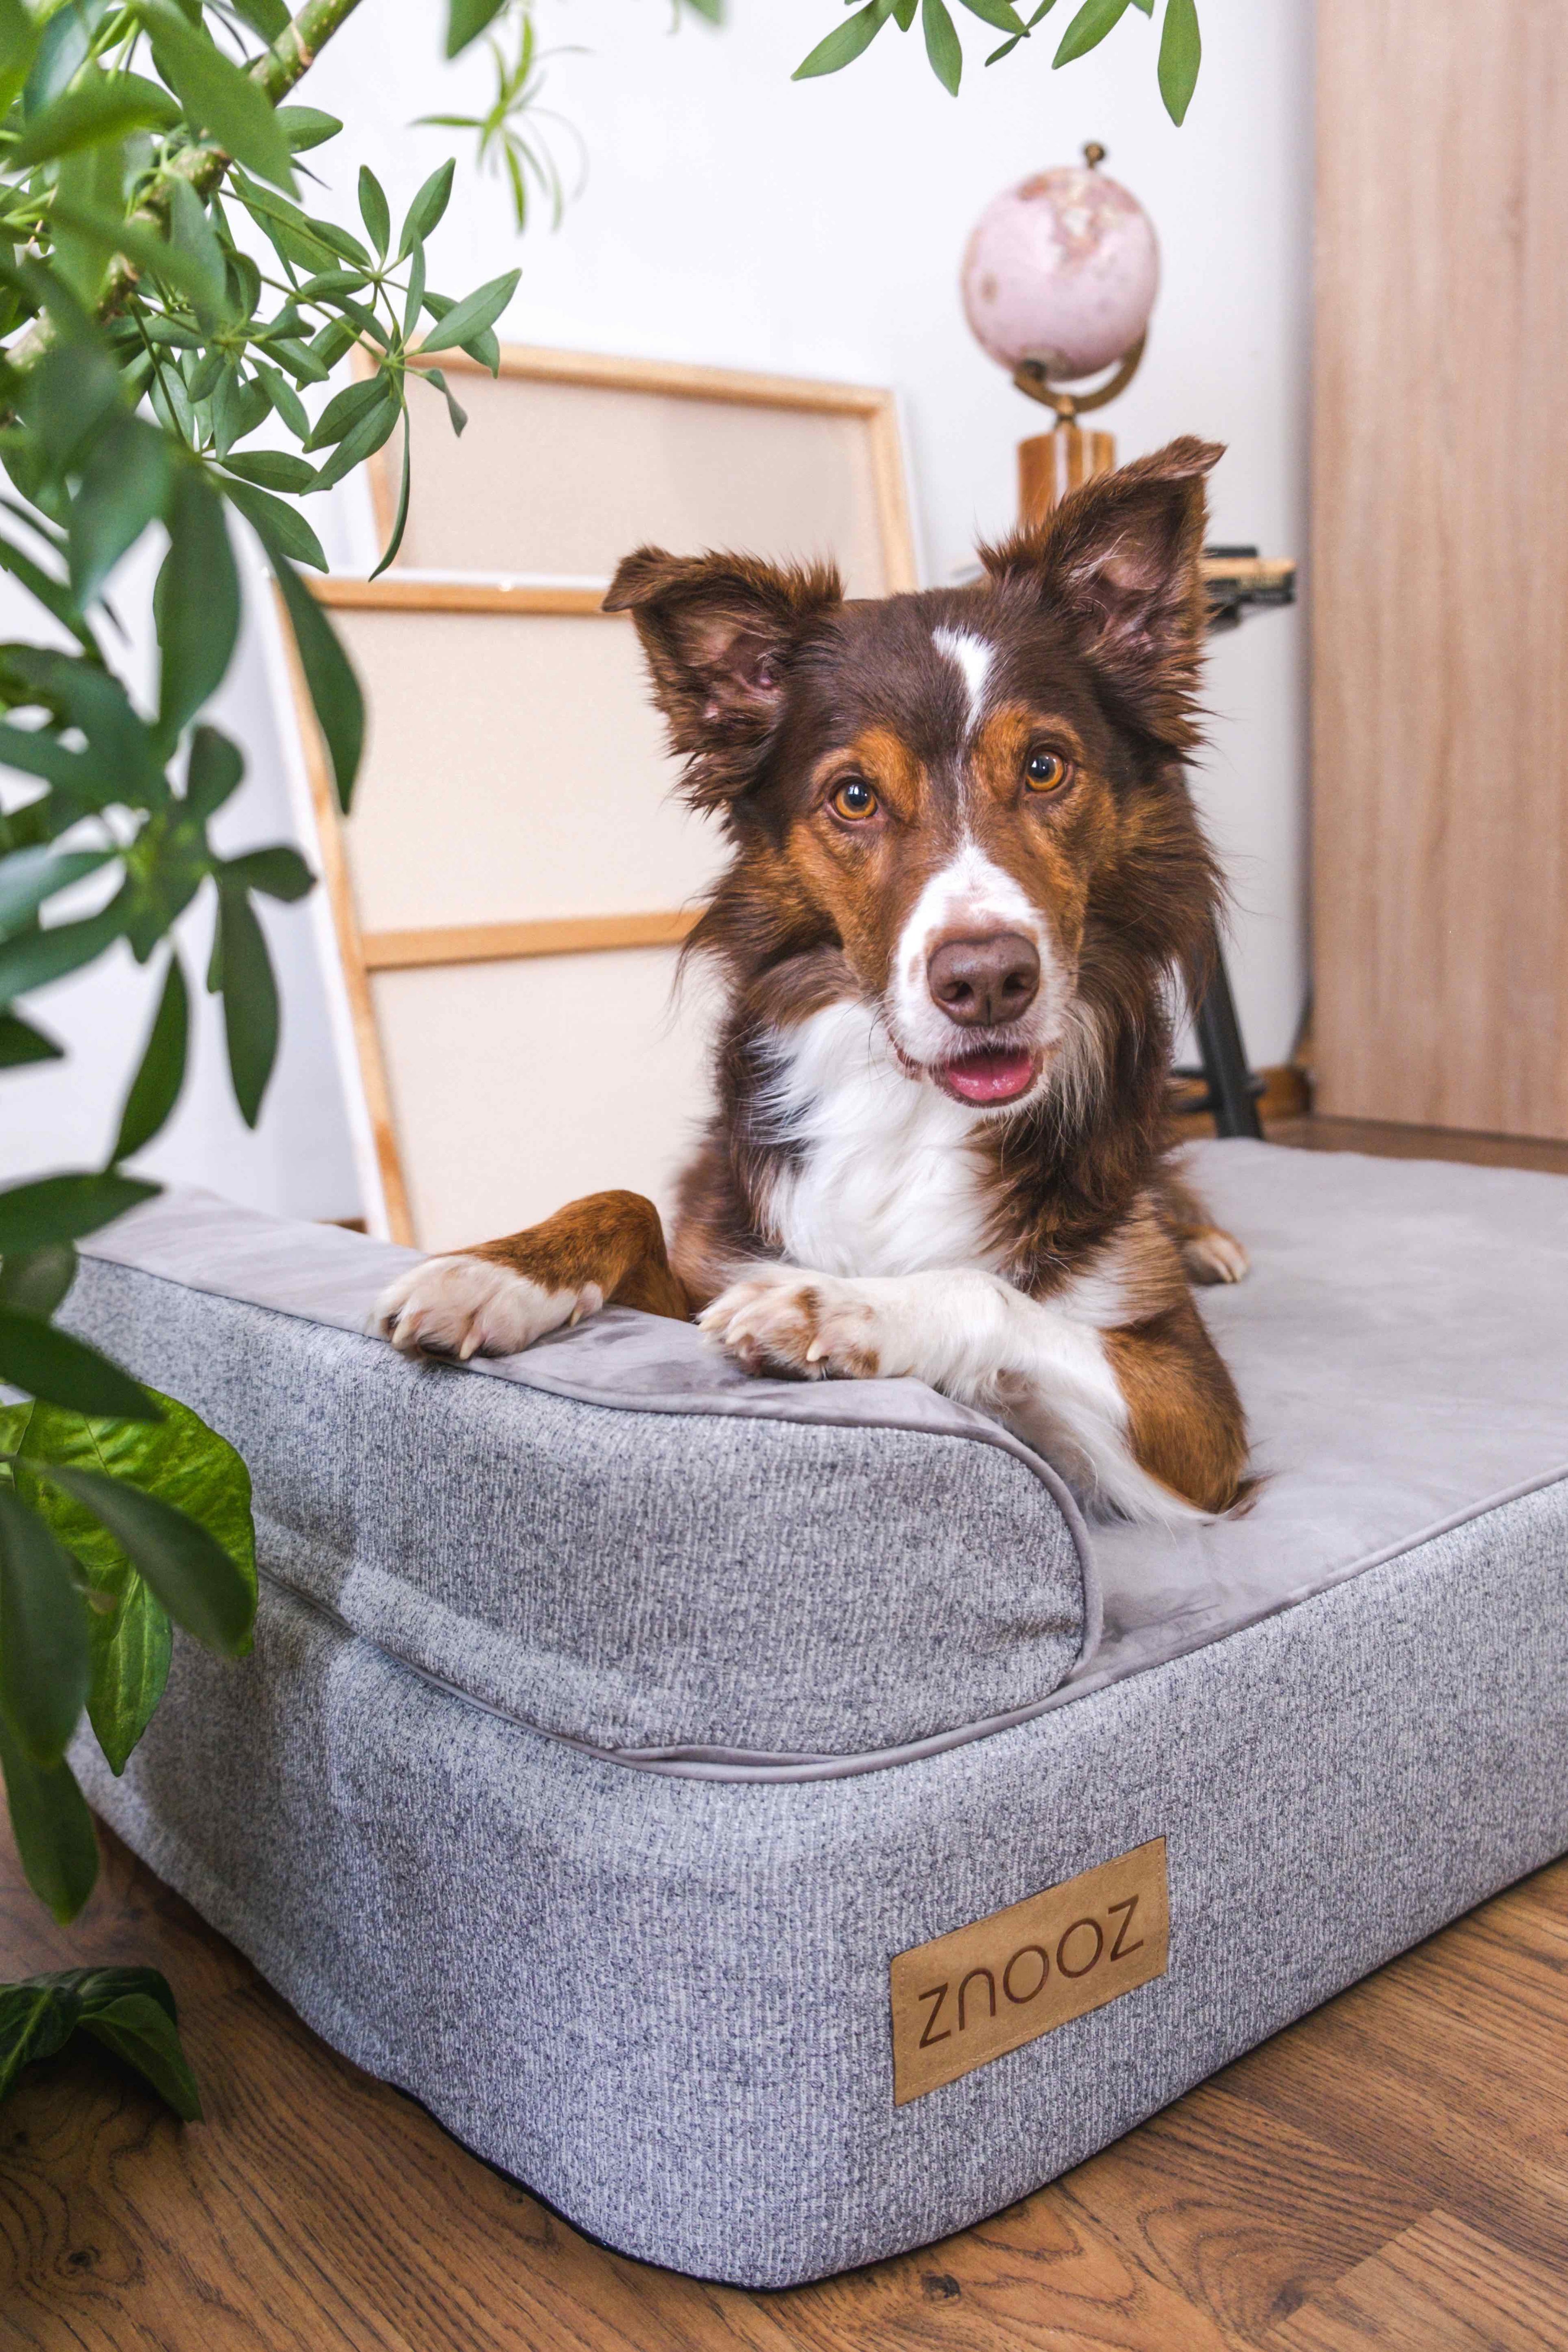 ZNOOZ Orthopedic Dog Bed